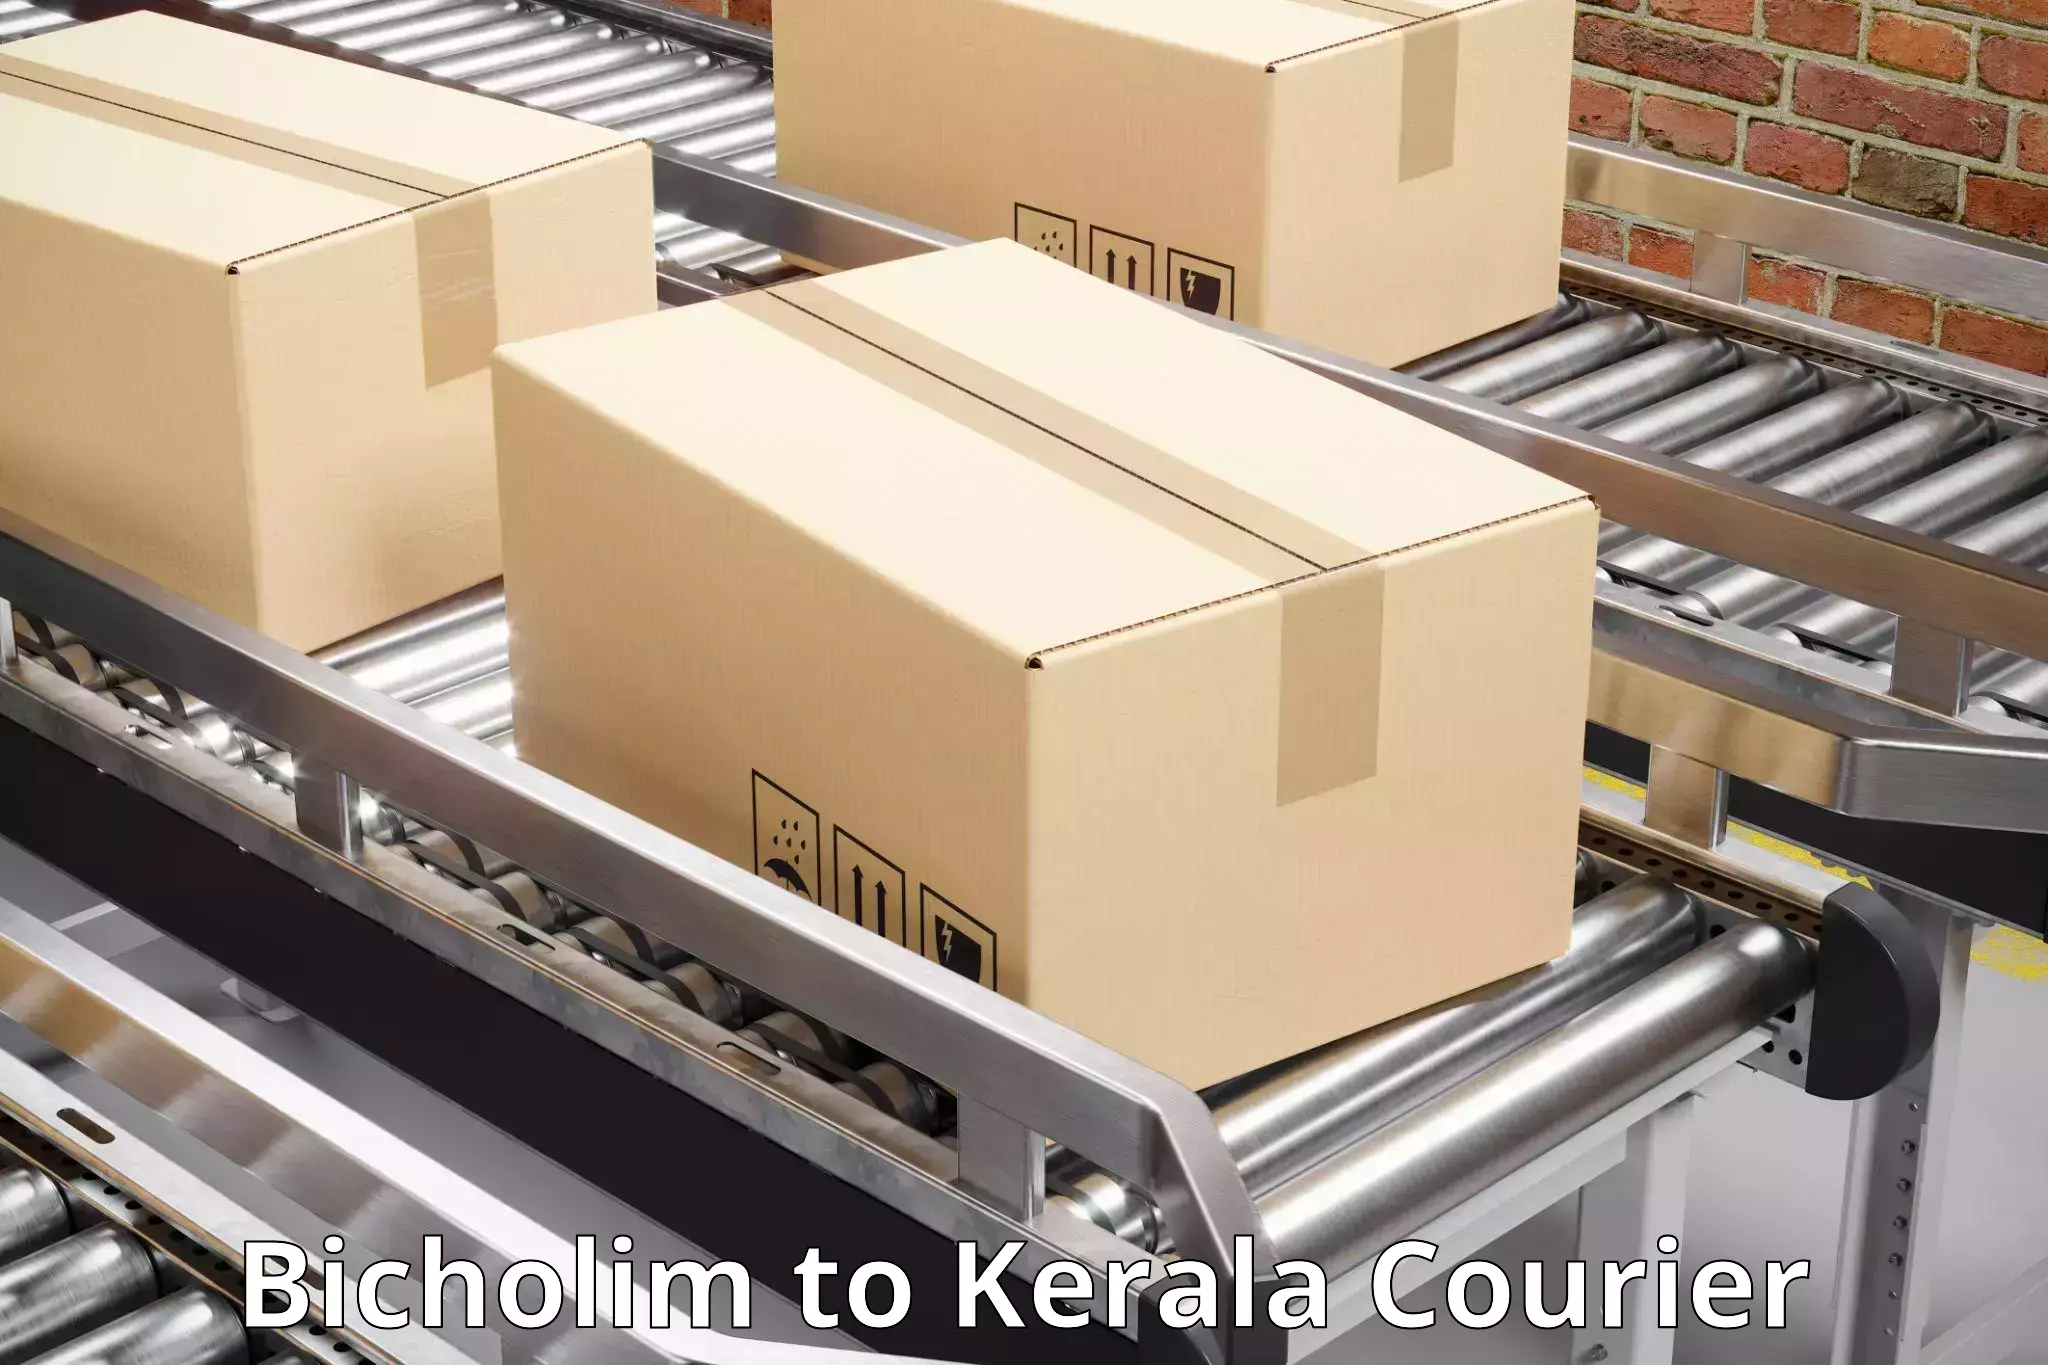 Advanced shipping network Bicholim to Thiruvananthapuram